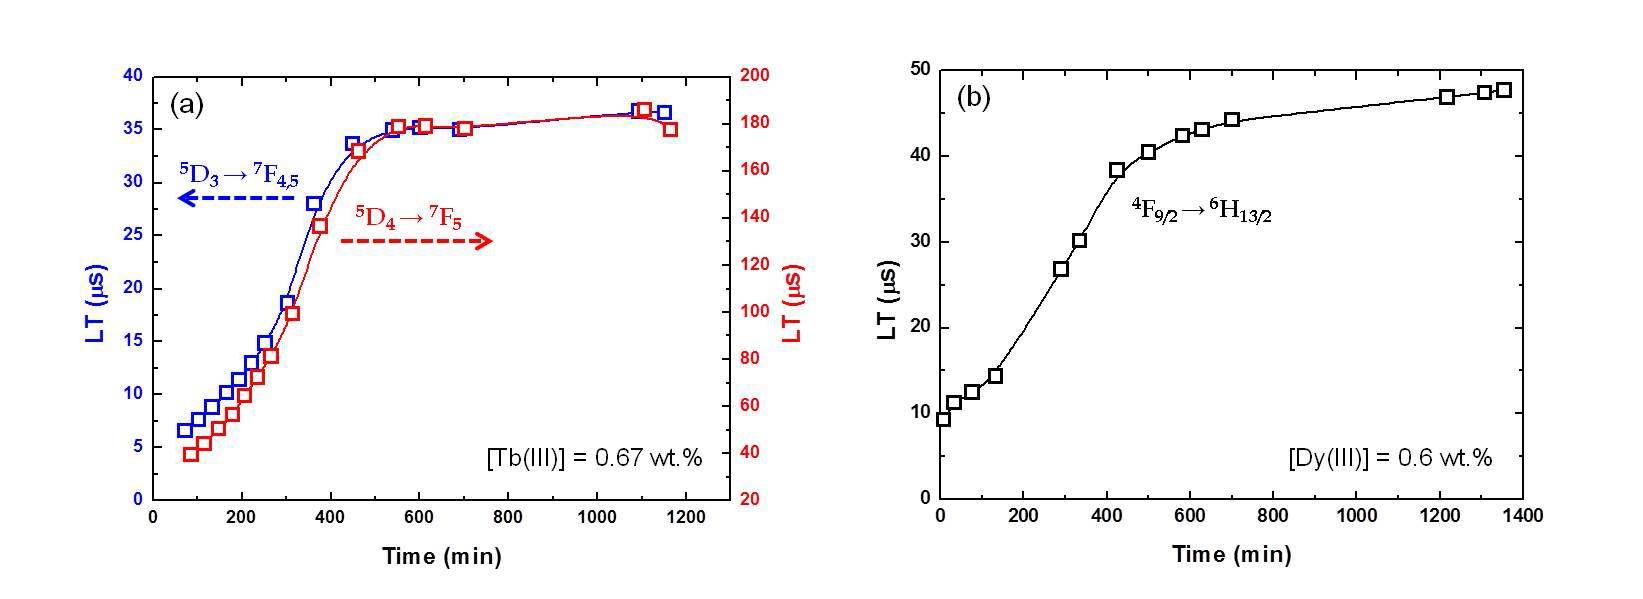 용융시간에 따른 500 oC LiCl-KCl 염 내 (a) Tb(III) 와 (b) Dy(III)의 형광 수명 변화